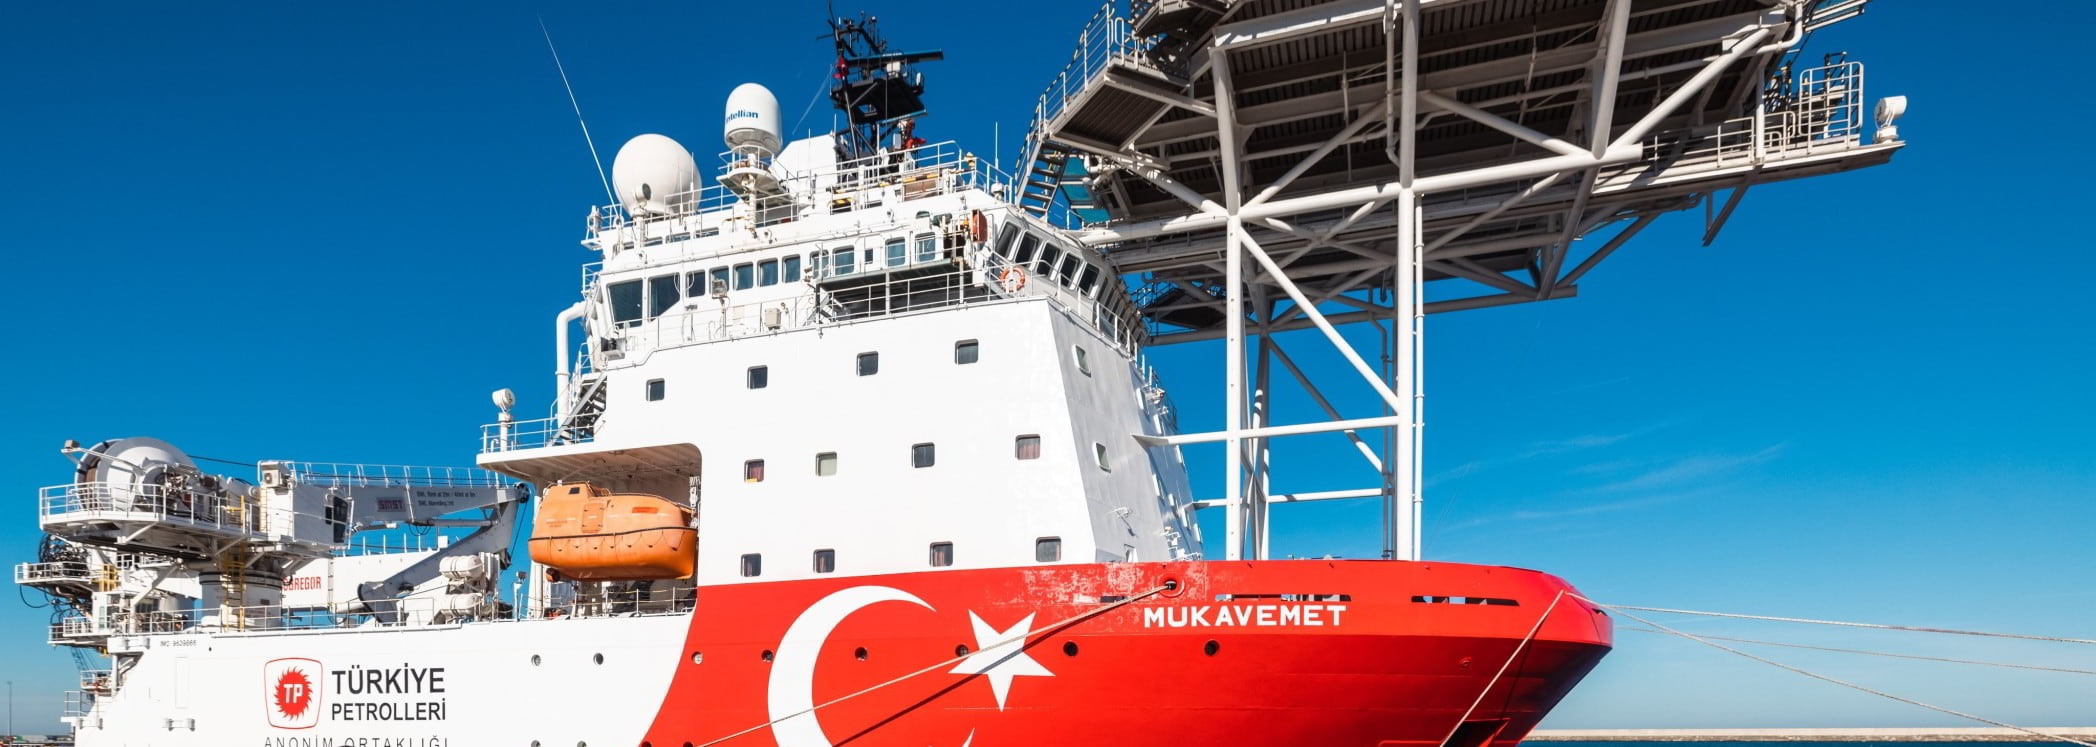 New vessel joins Türkiye’s fleet as Black Sea project nears first gas